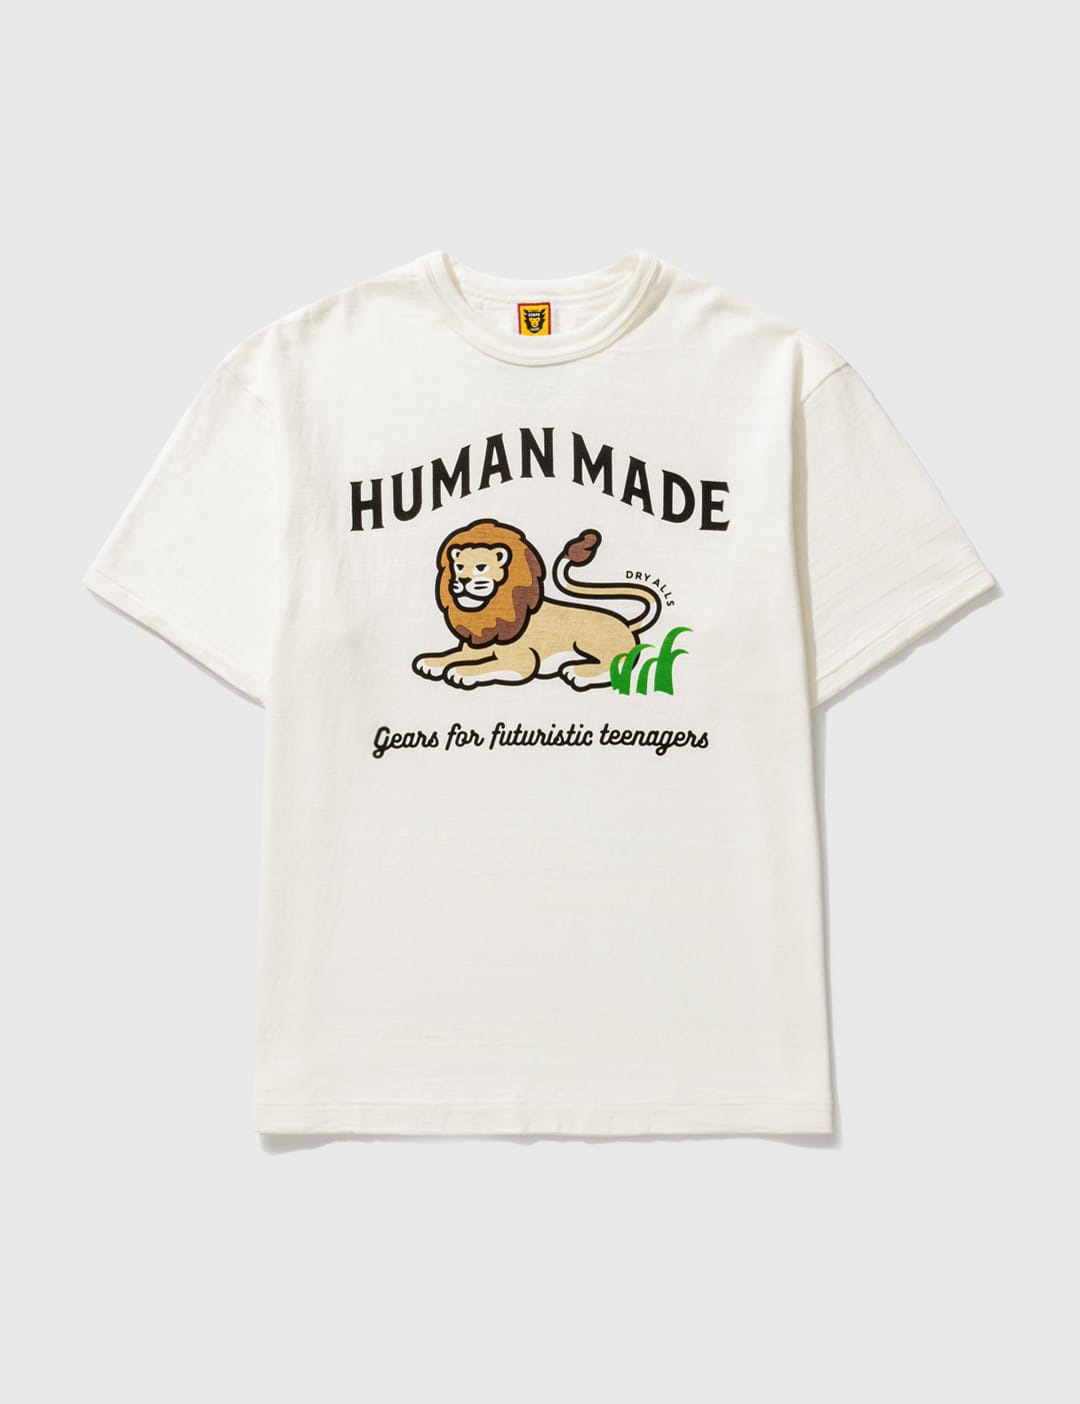 Human Made - ライオン Tシャツ | HBX - ハイプビースト(Hypebeast)が